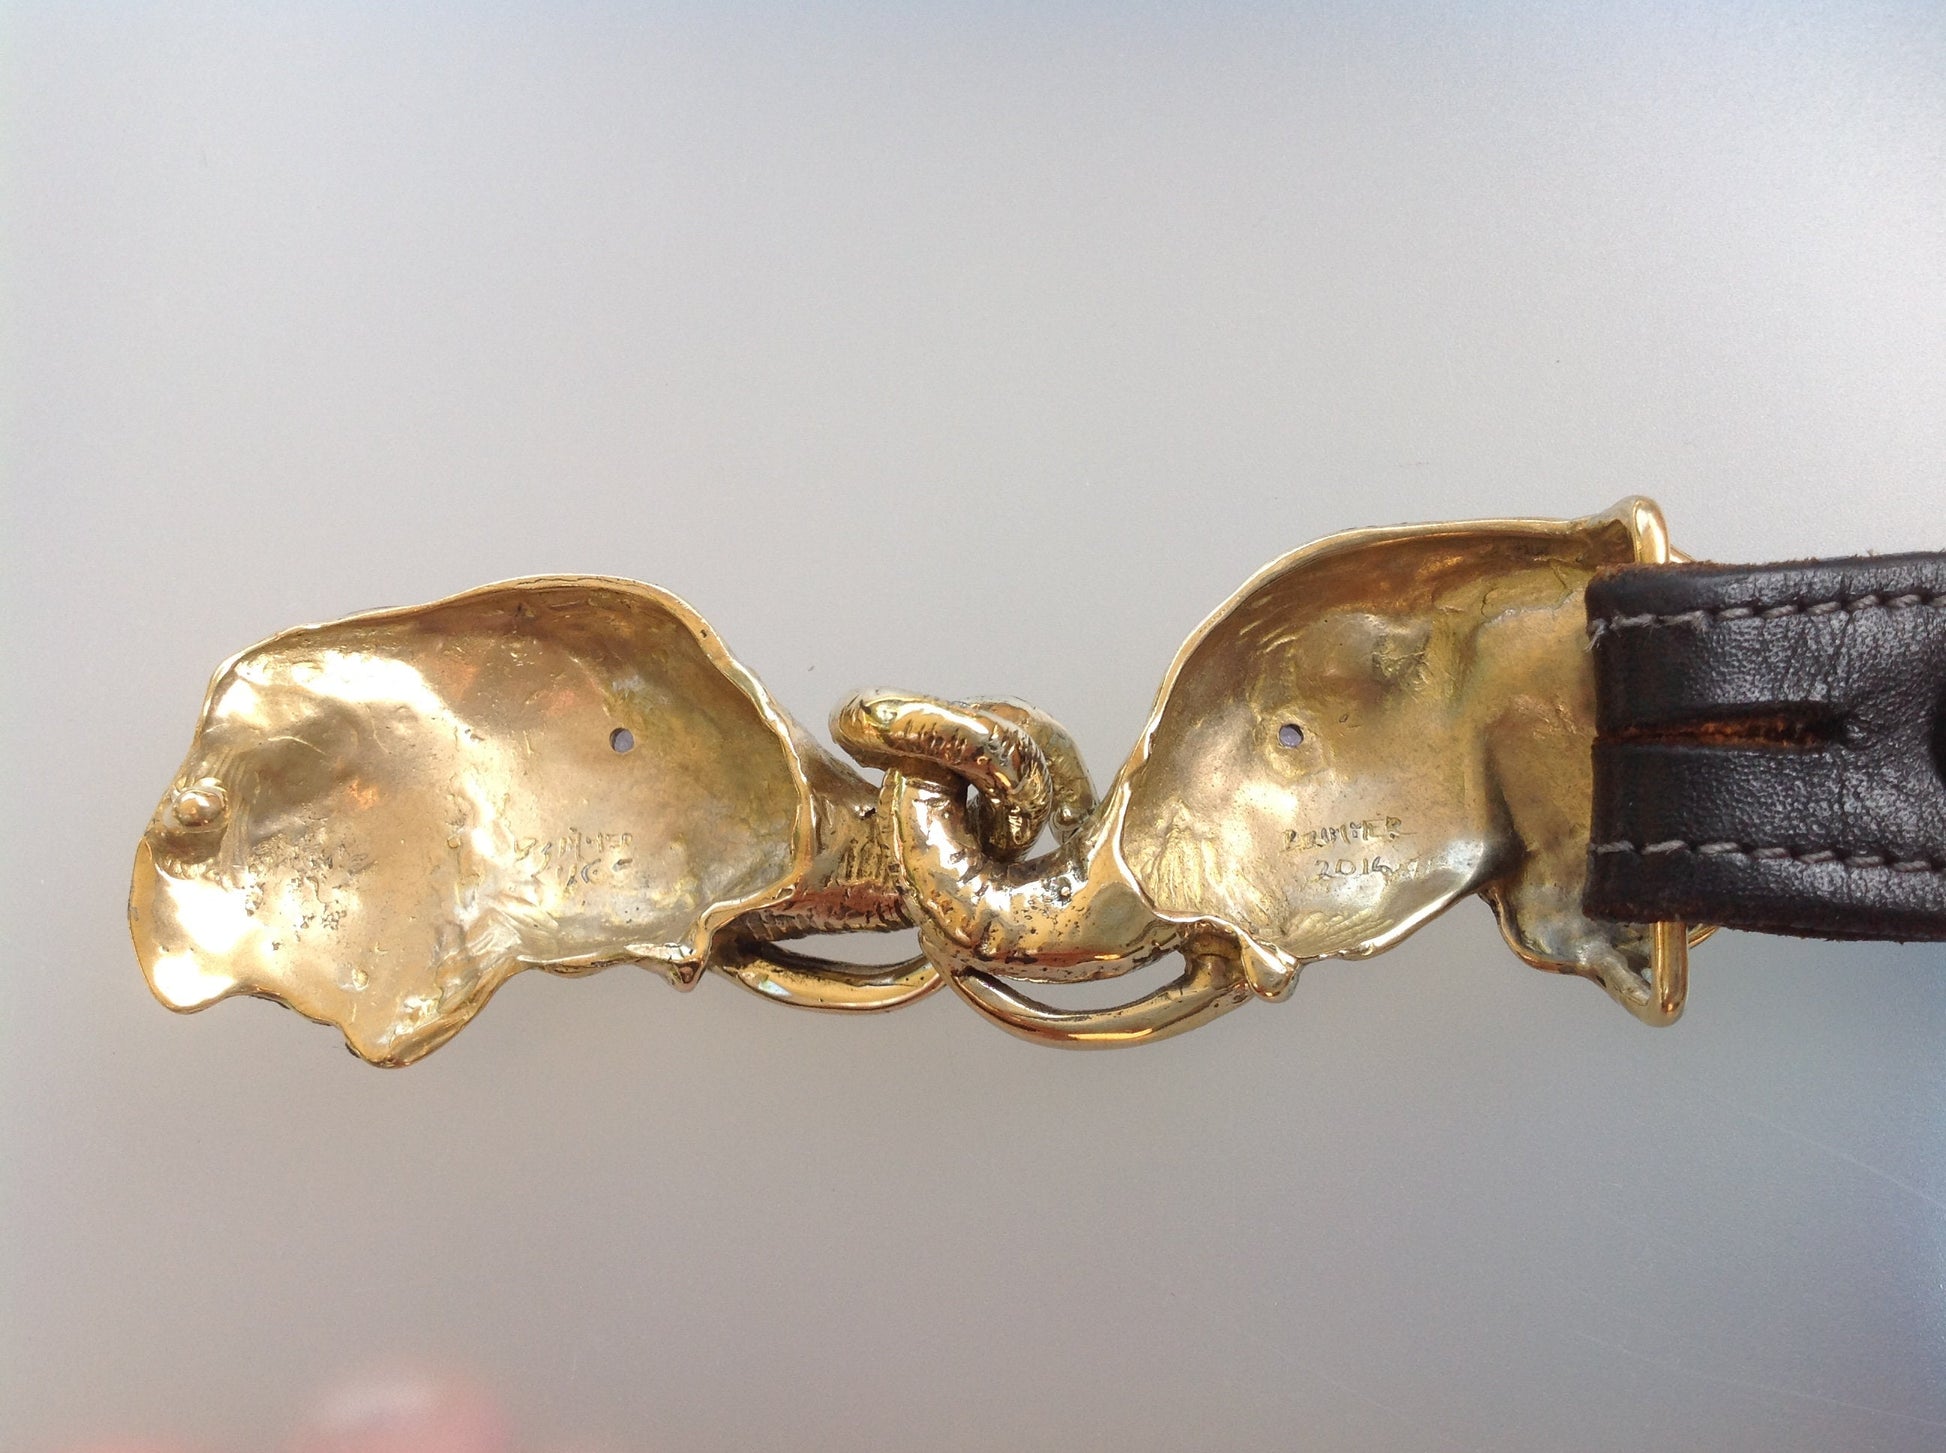 Articulating Elephants belt buckle Sculpture jewelry in bronze NO